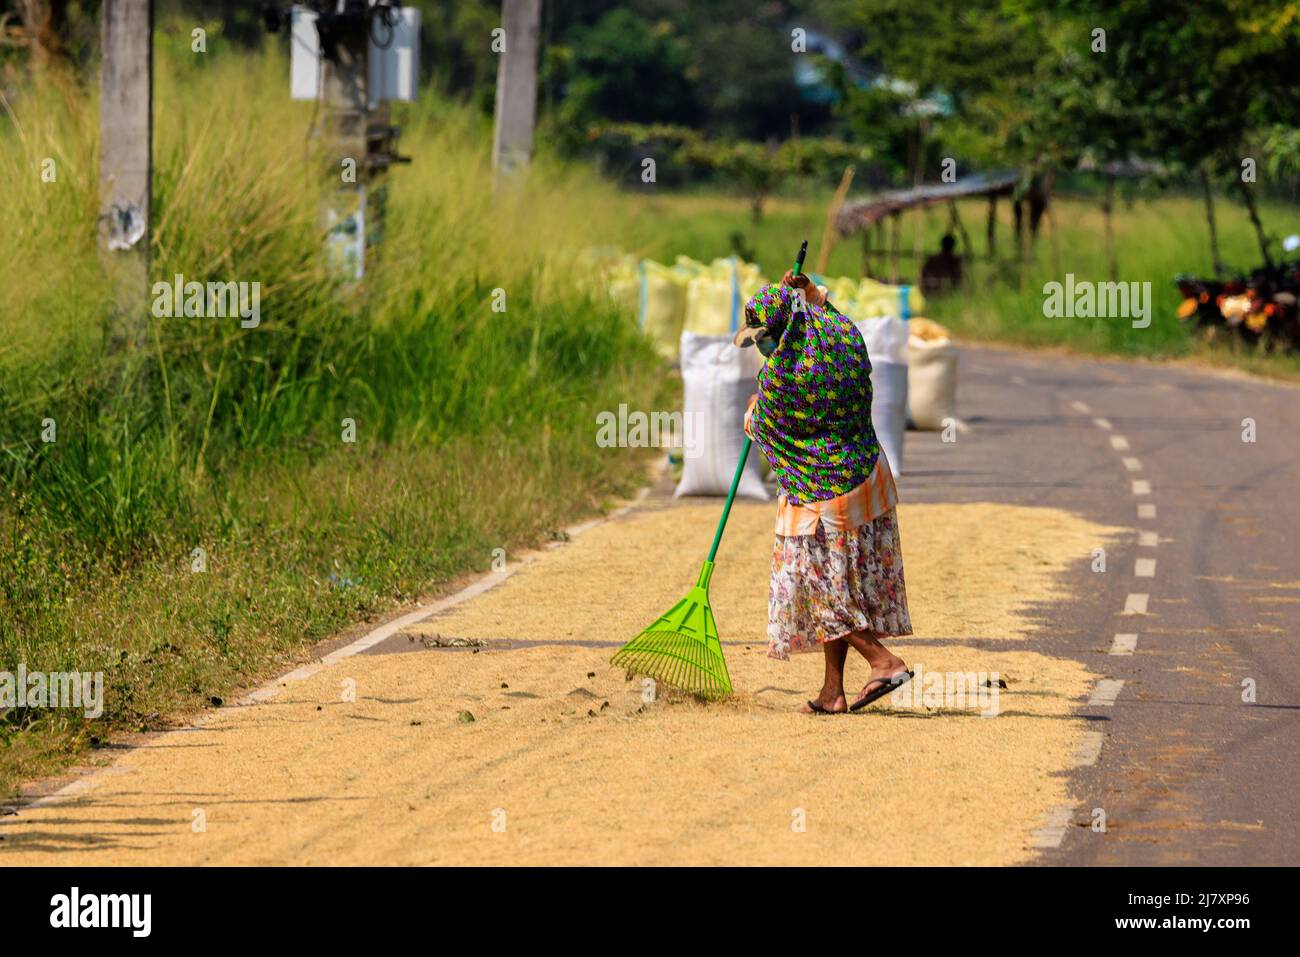 los lugareños esparcen arroz para secarse en el asfalto de la carretera bajo el sol reduciendo el tráfico a un solo carril Foto de stock